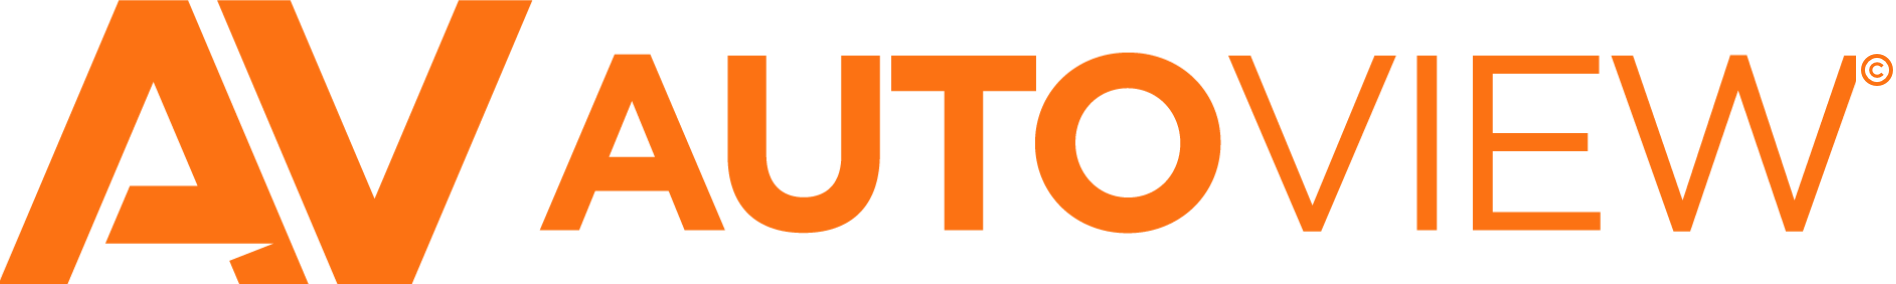 AV and Name Logo for Autoview.com